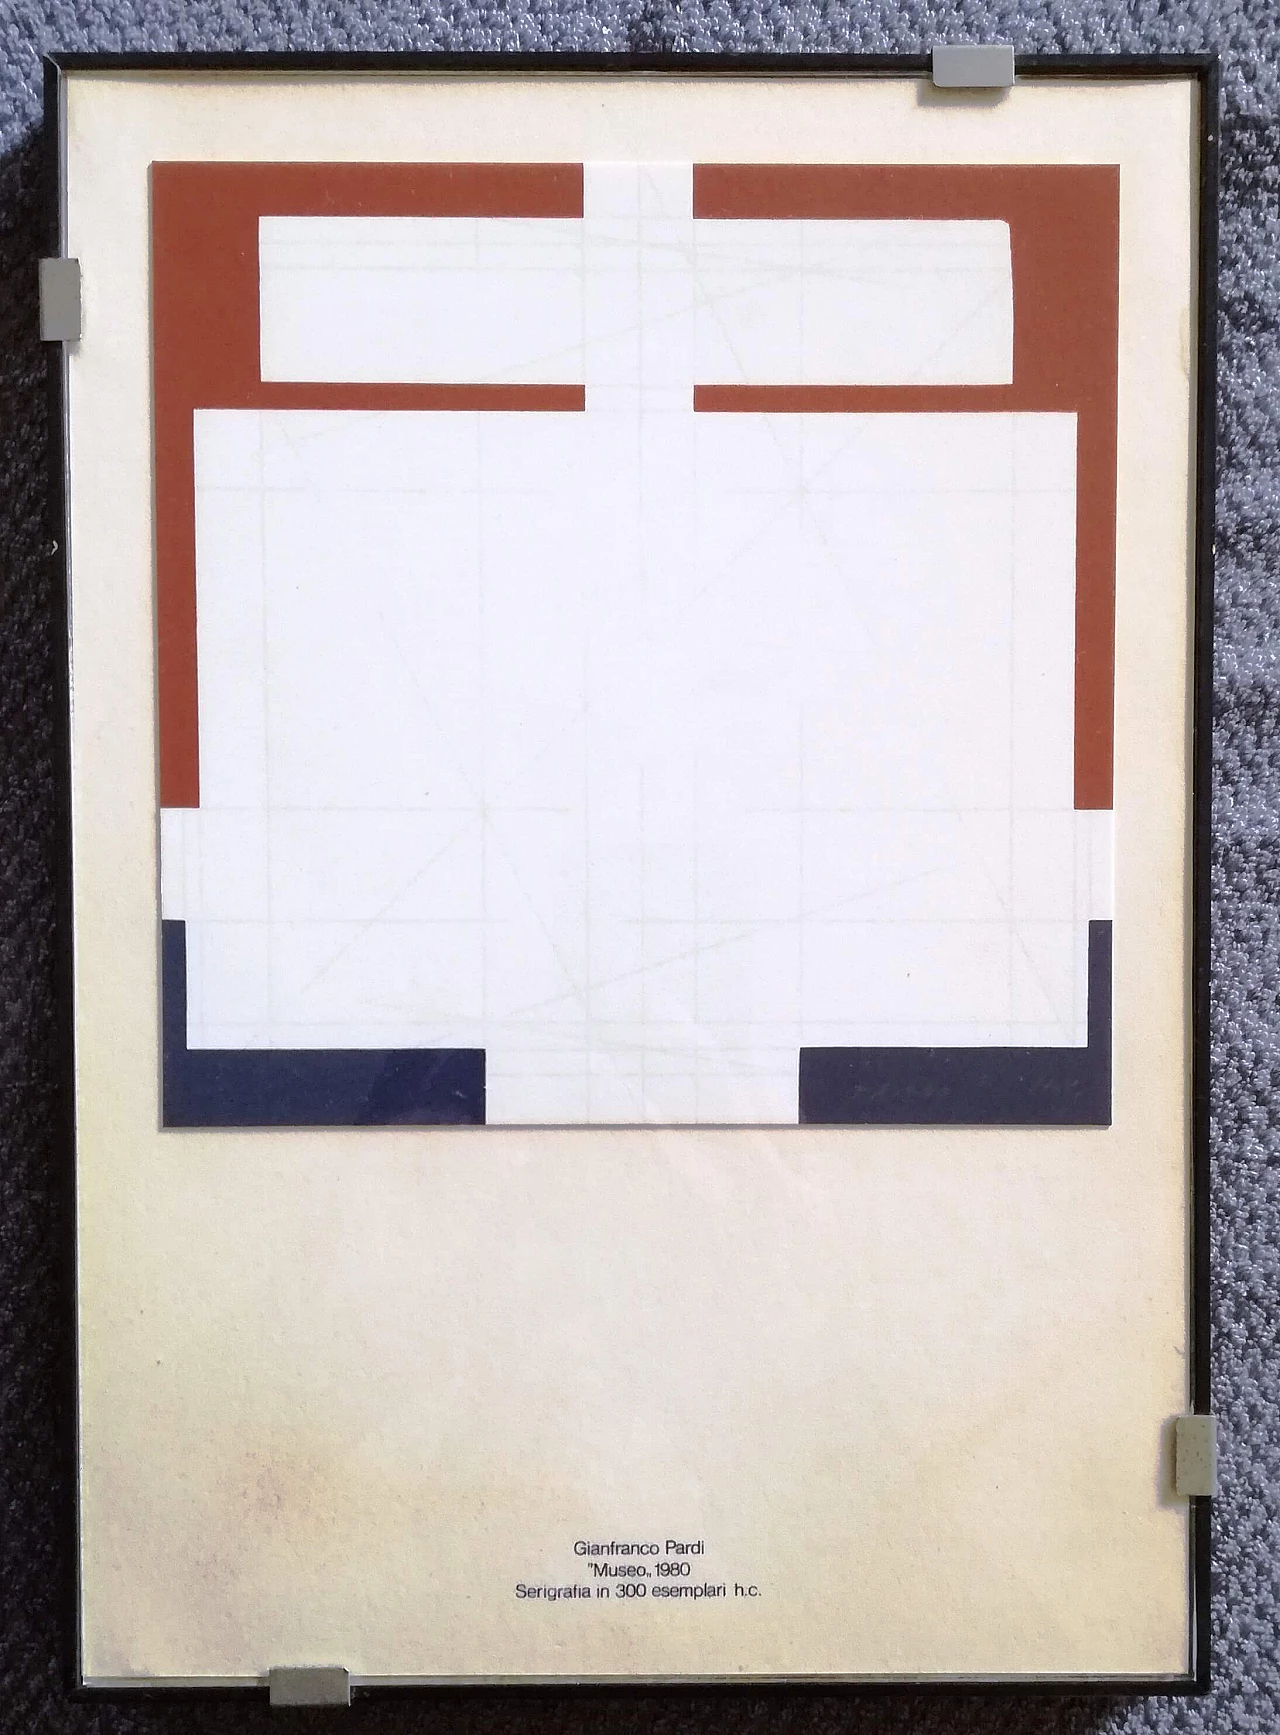 Gianfranco Pardi, Museum, screen print, 1980 2